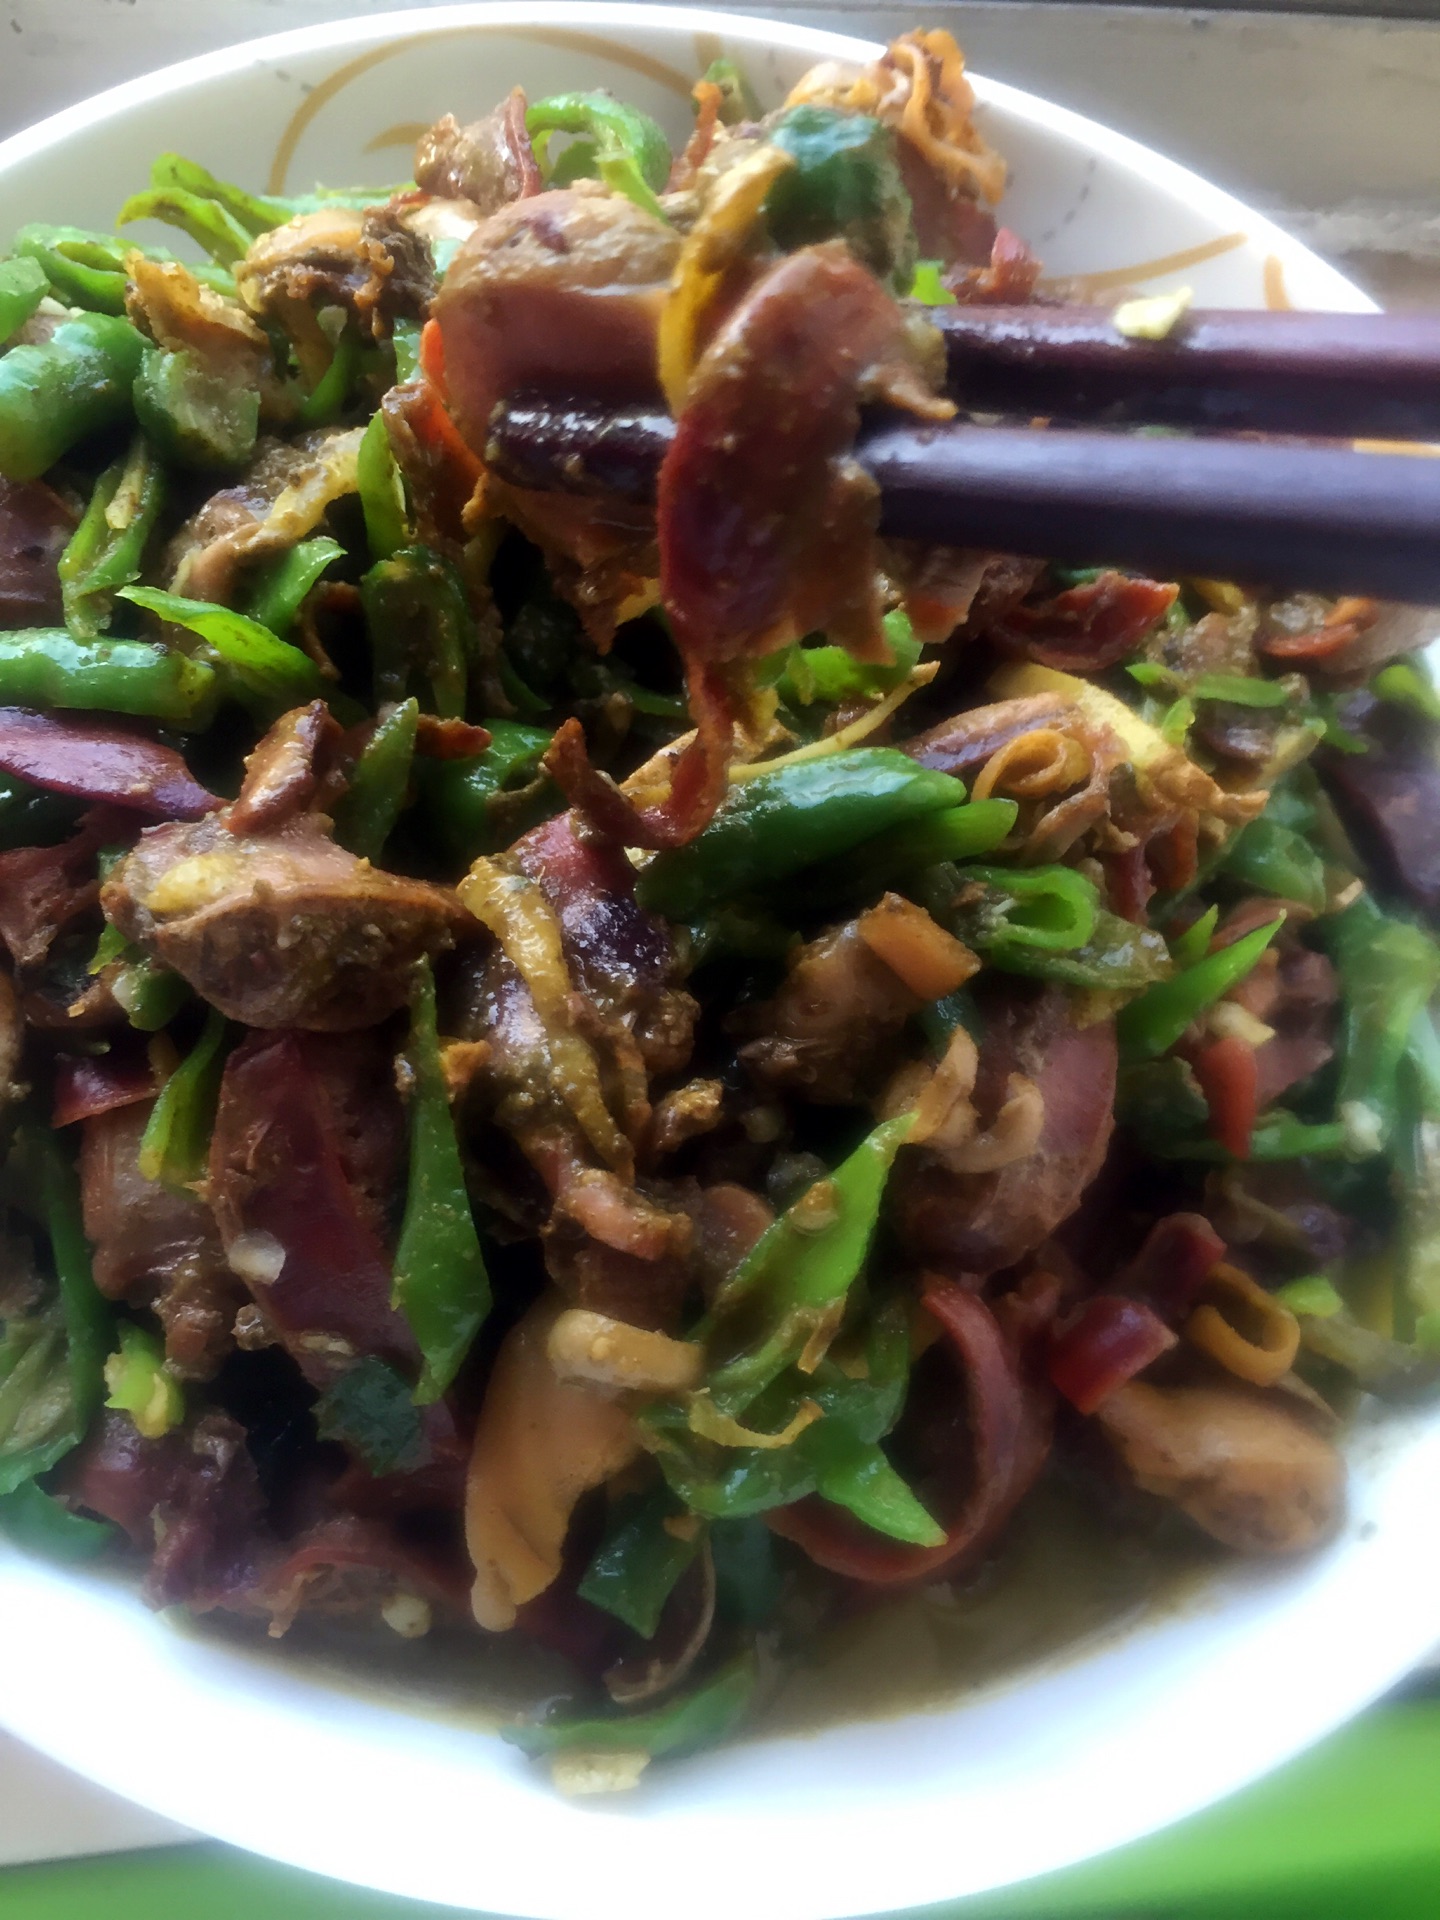 在新安江的农家乐里，第一次吃到河蚌，200元四个菜你觉得值吗？